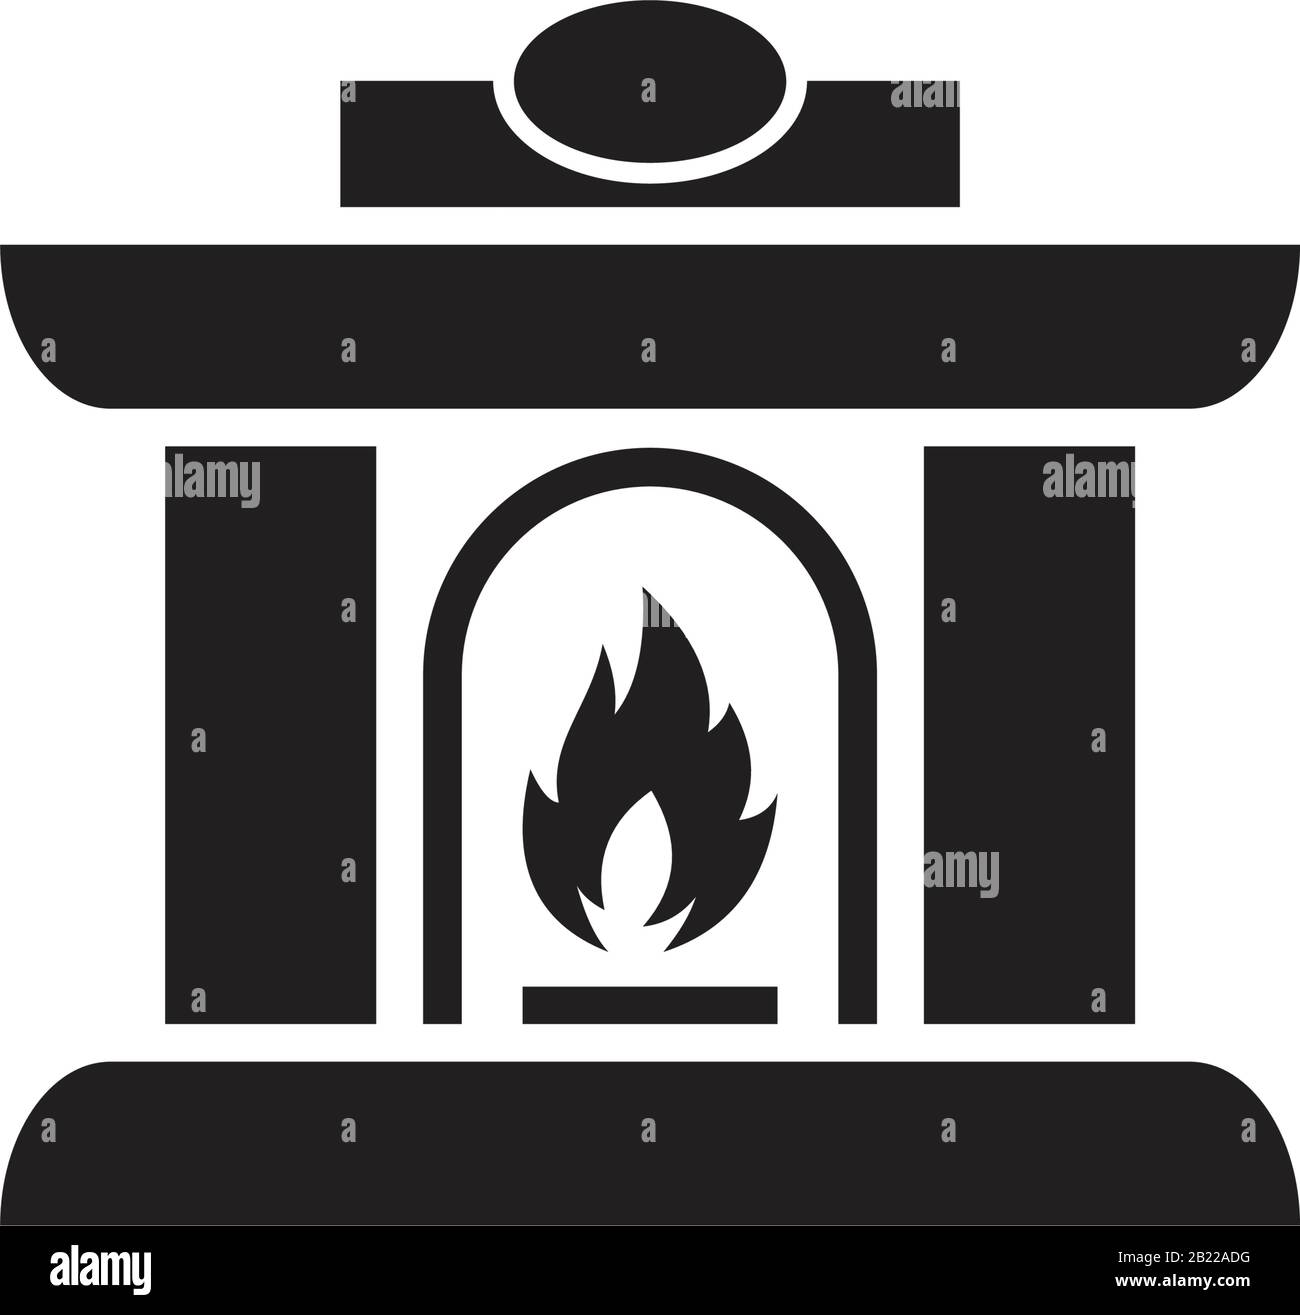 Modèle D'Icône de cheminée de Noël noir modifiable. Symbole D'Icône de cheminée de Noël illustration vectorielle plate pour le graphisme et le web design. Illustration de Vecteur